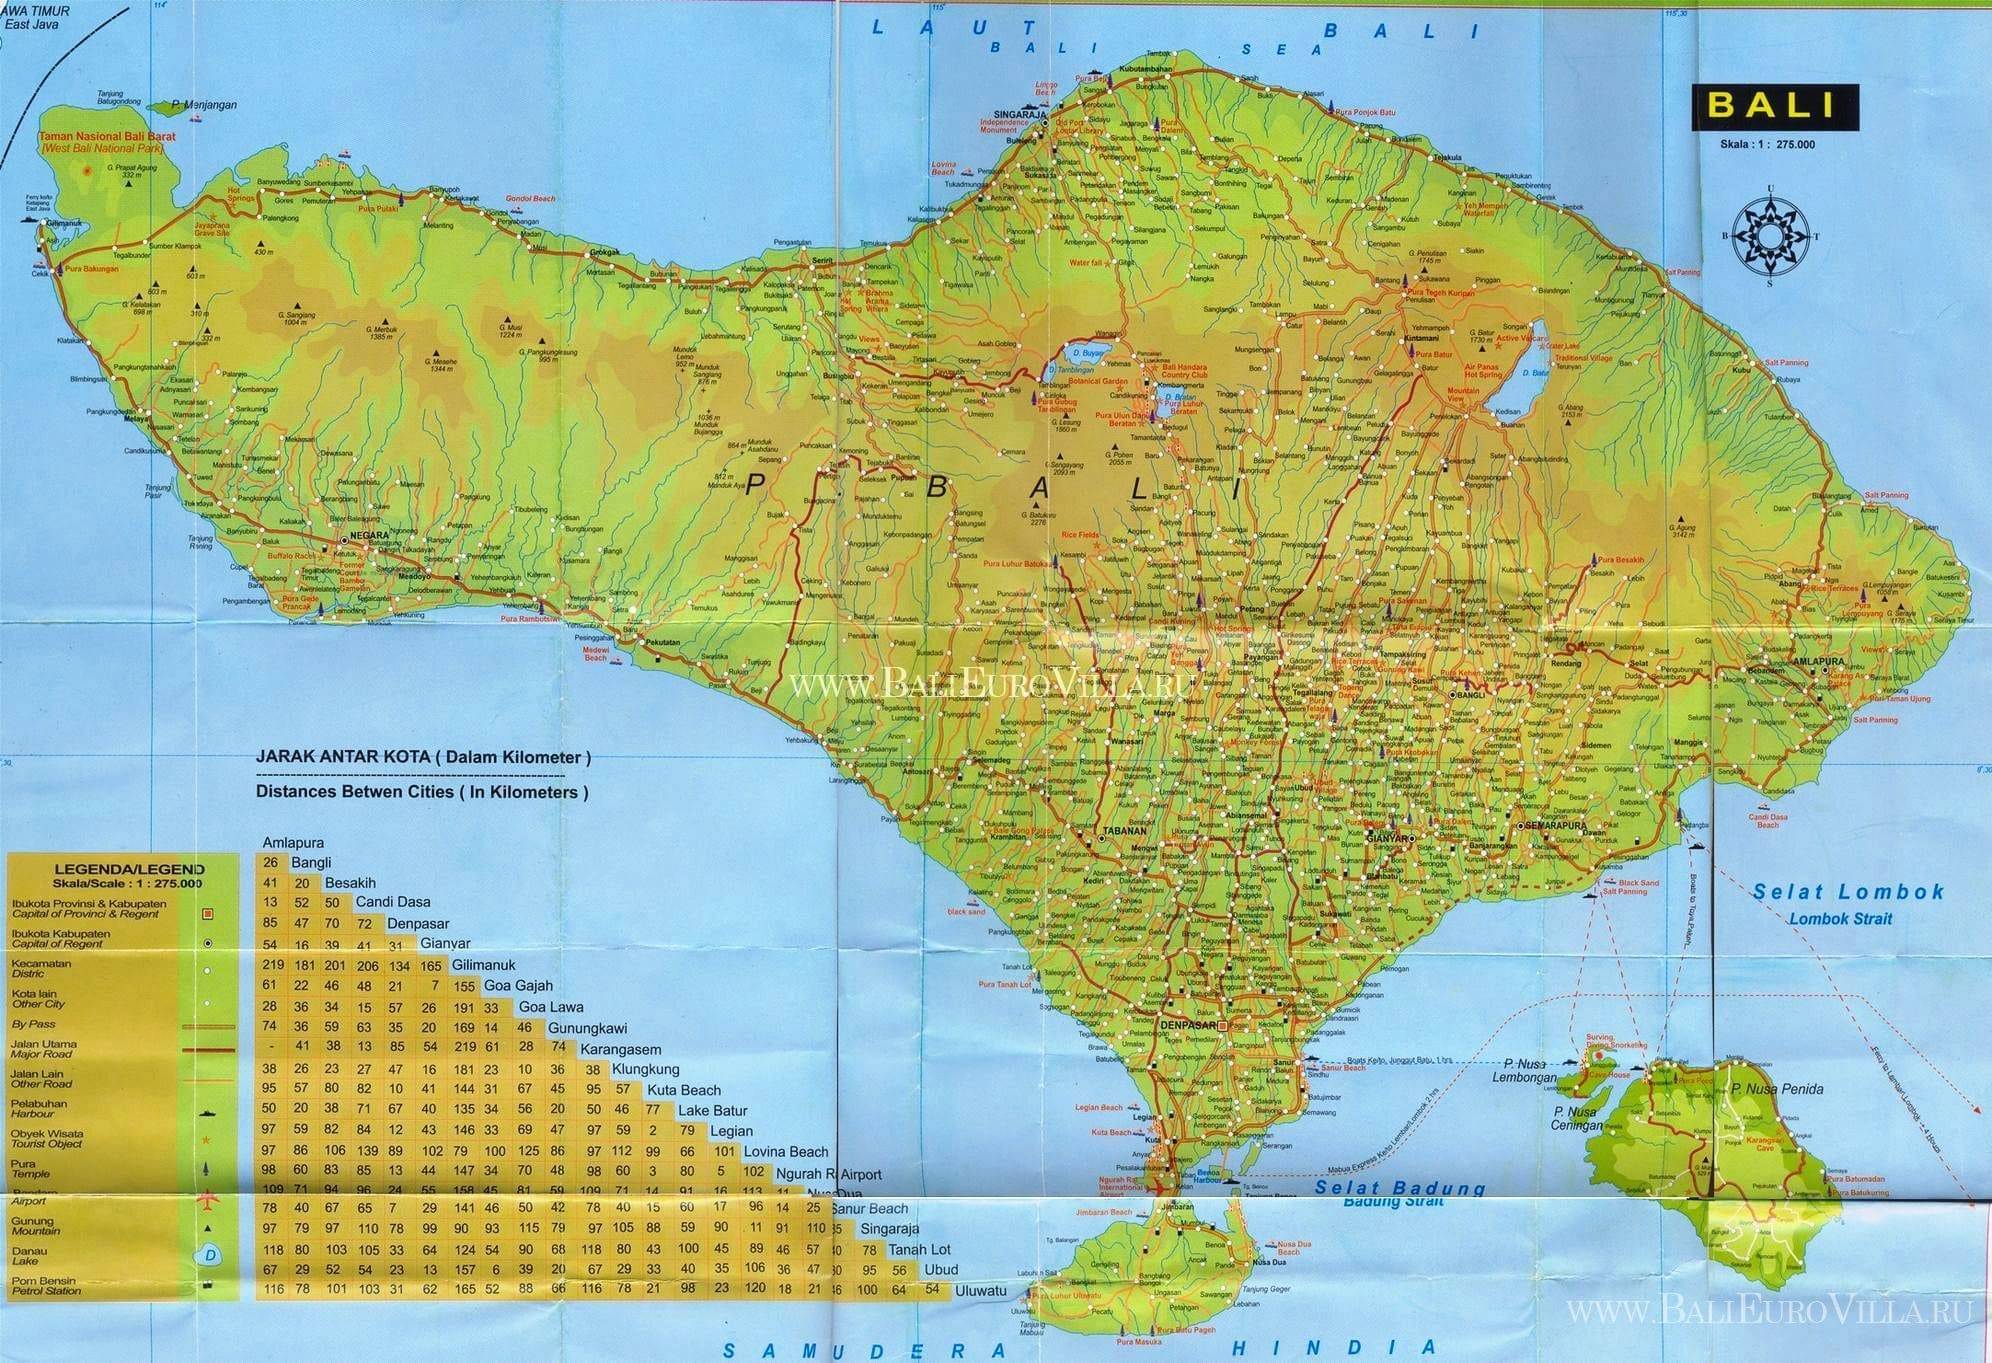 Остров бали: где находится на карте, отдых, достопримечательности, фото, видео